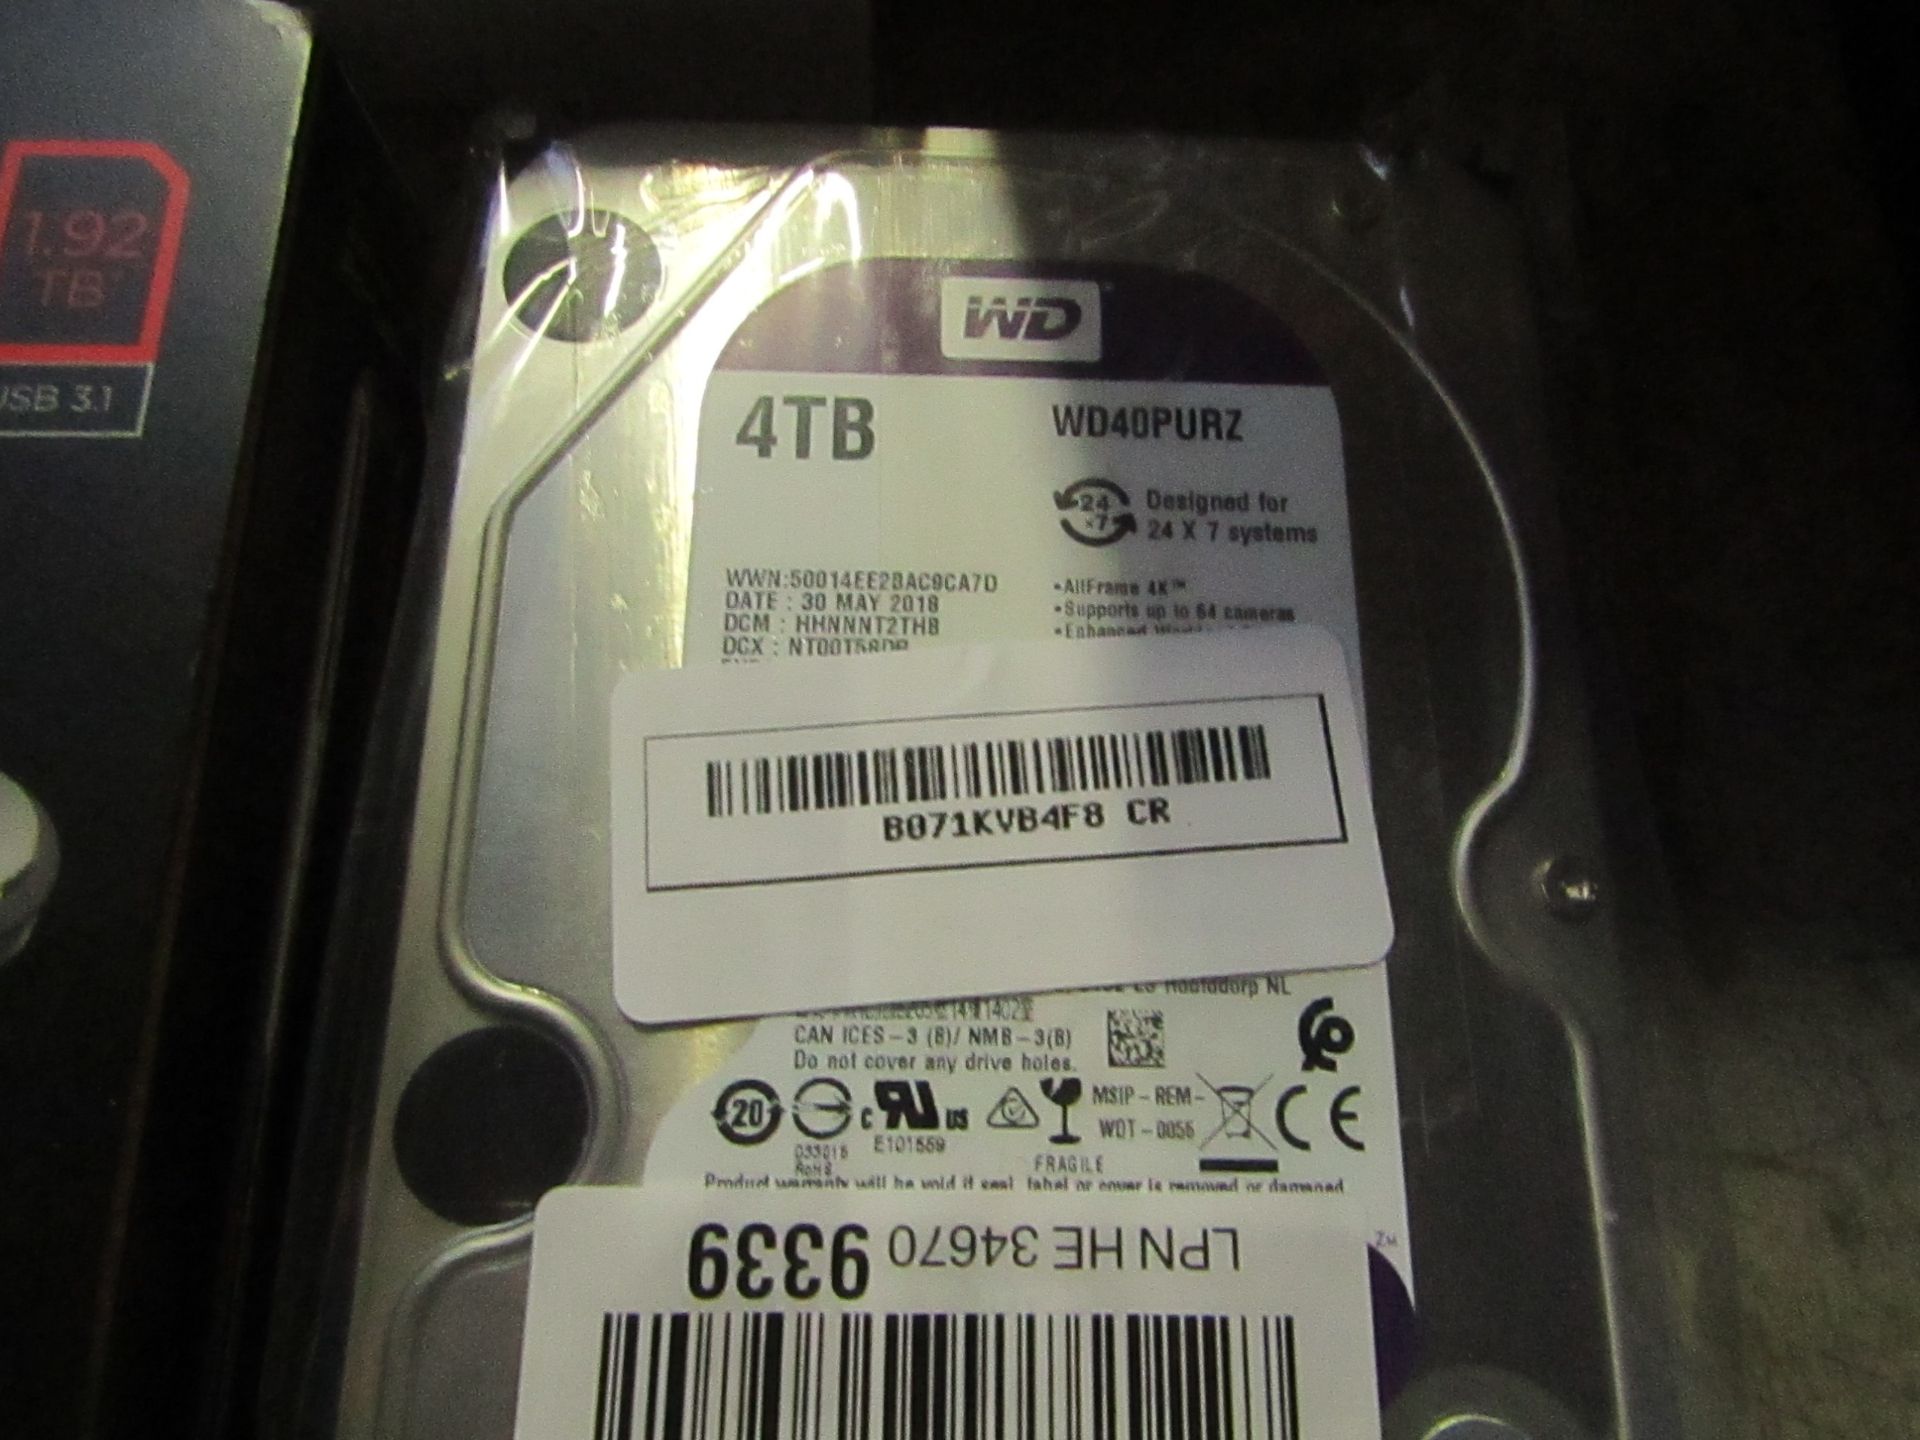 Western Digital 4TB hard drive, untested.